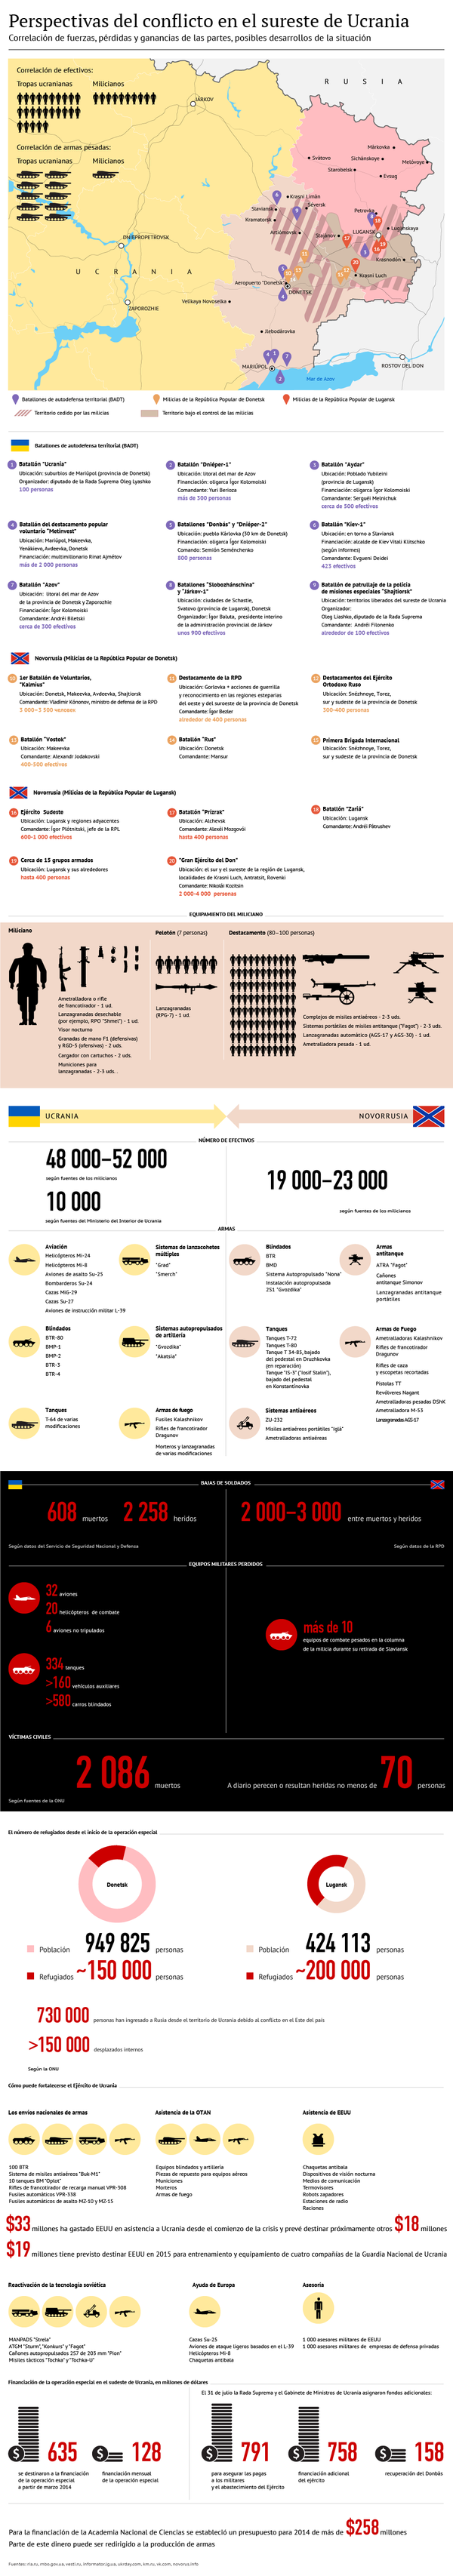 Perspectivas del conflicto en el sureste de Ucrania - Sputnik Mundo